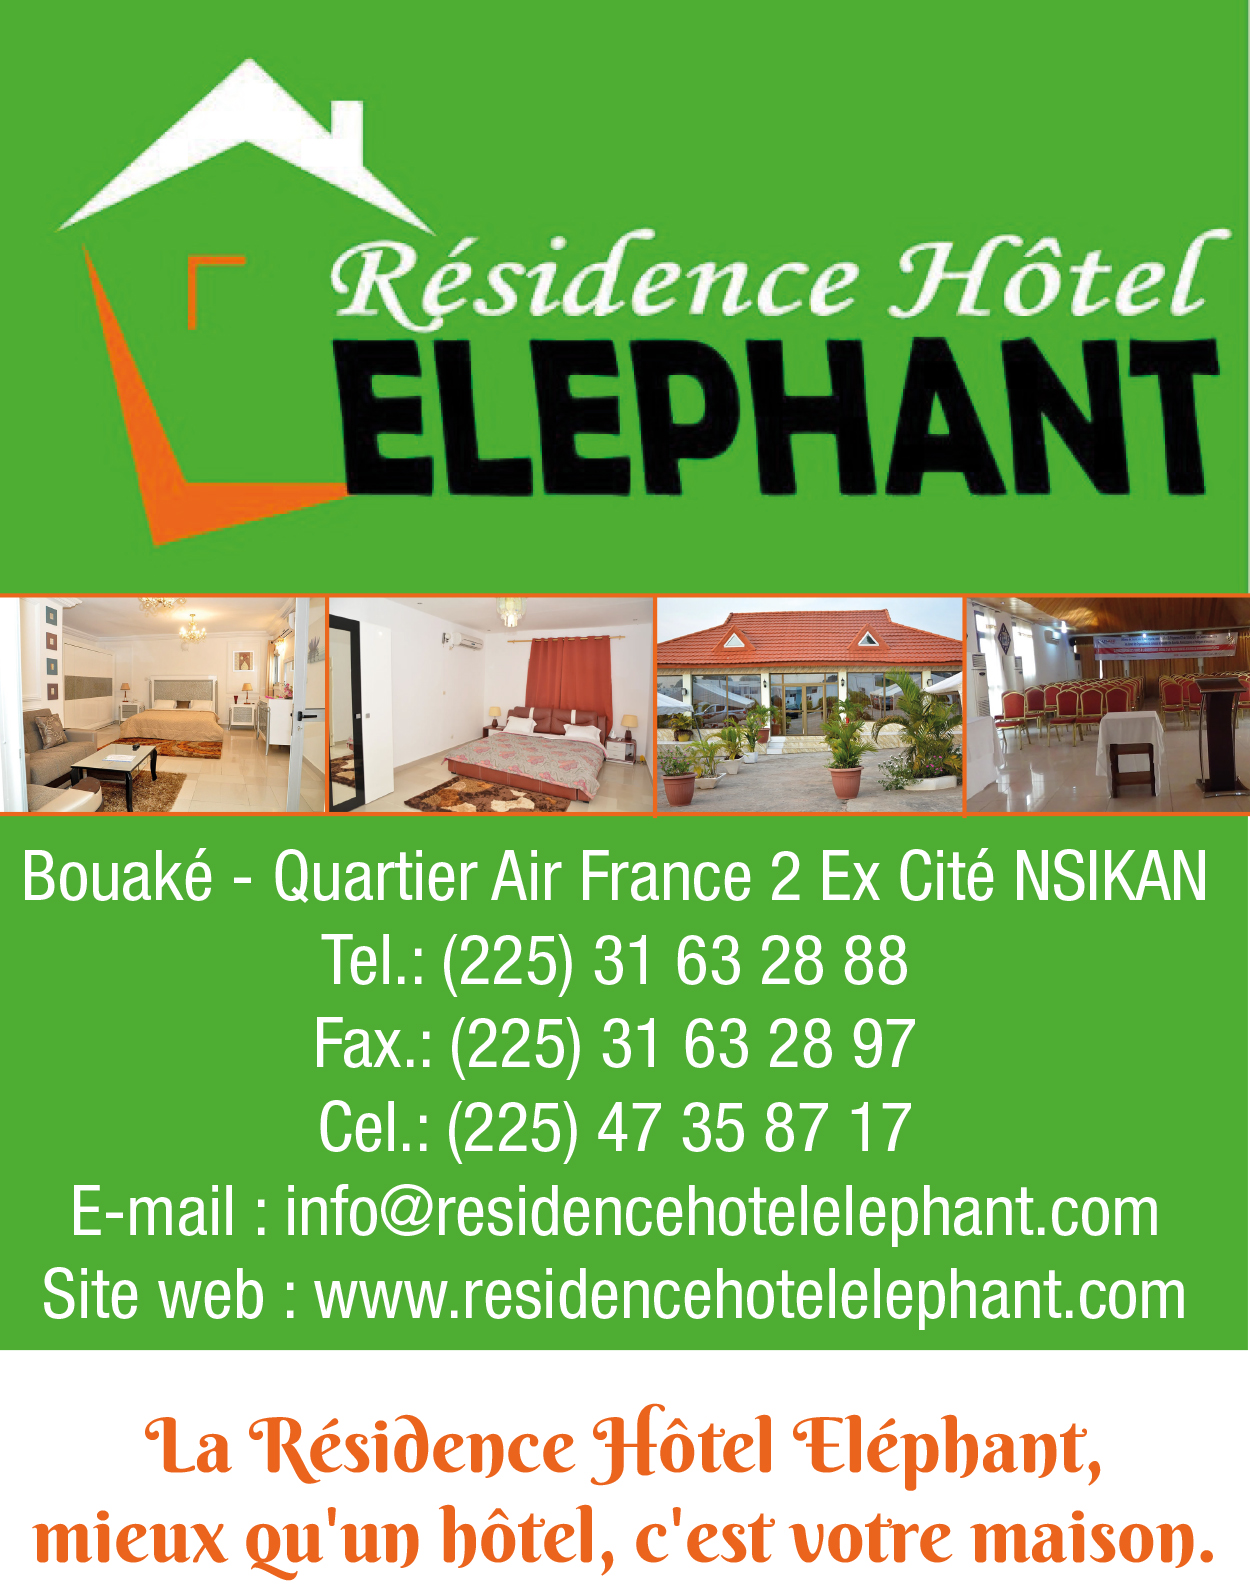 Residence Hotel Elephant